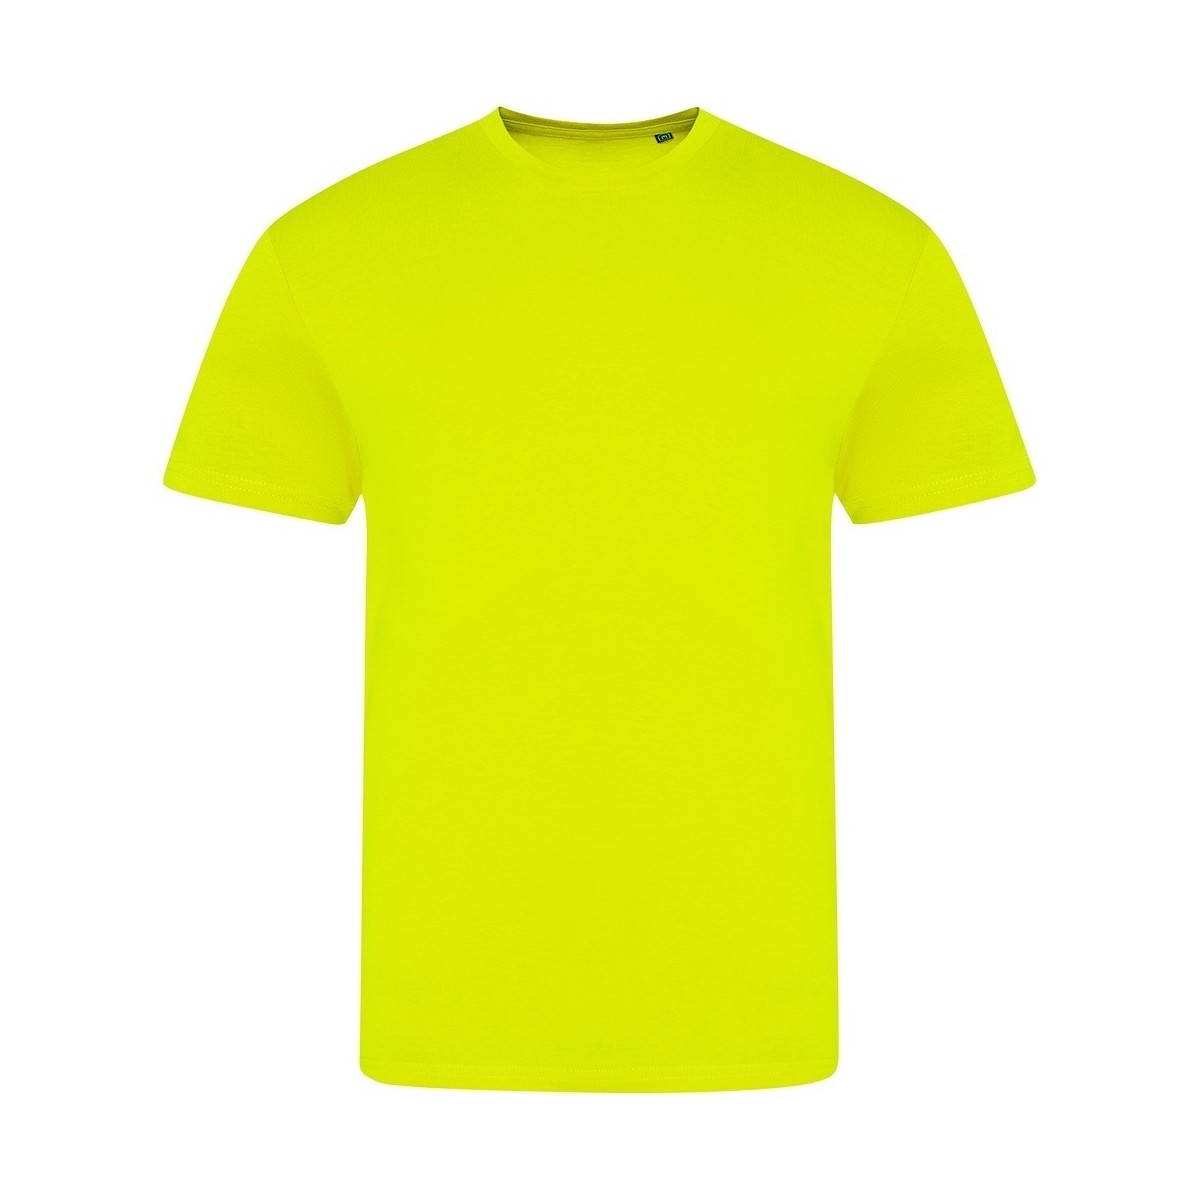 Vêtements T-shirts manches longues Awdis Electric Tri-Blend Multicolore